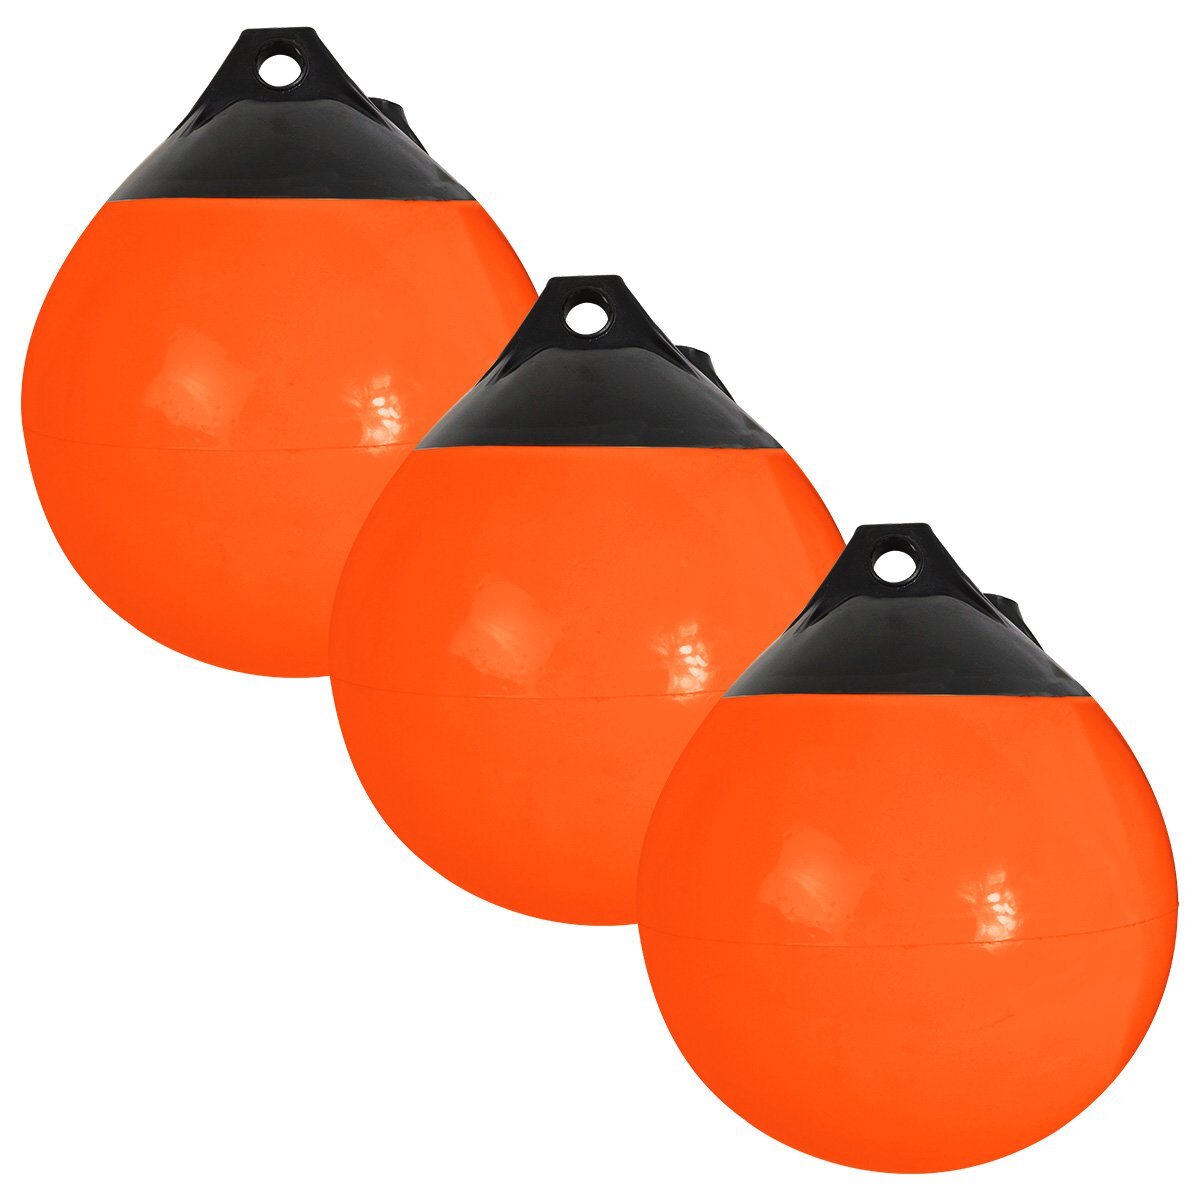 [3個セット] 涙型 ボートフェンダー 橙/黒 Φ380mm×300mm [オレンジ] ブイ 浮き しずく型 ボート 船 エアー ガード ヨット